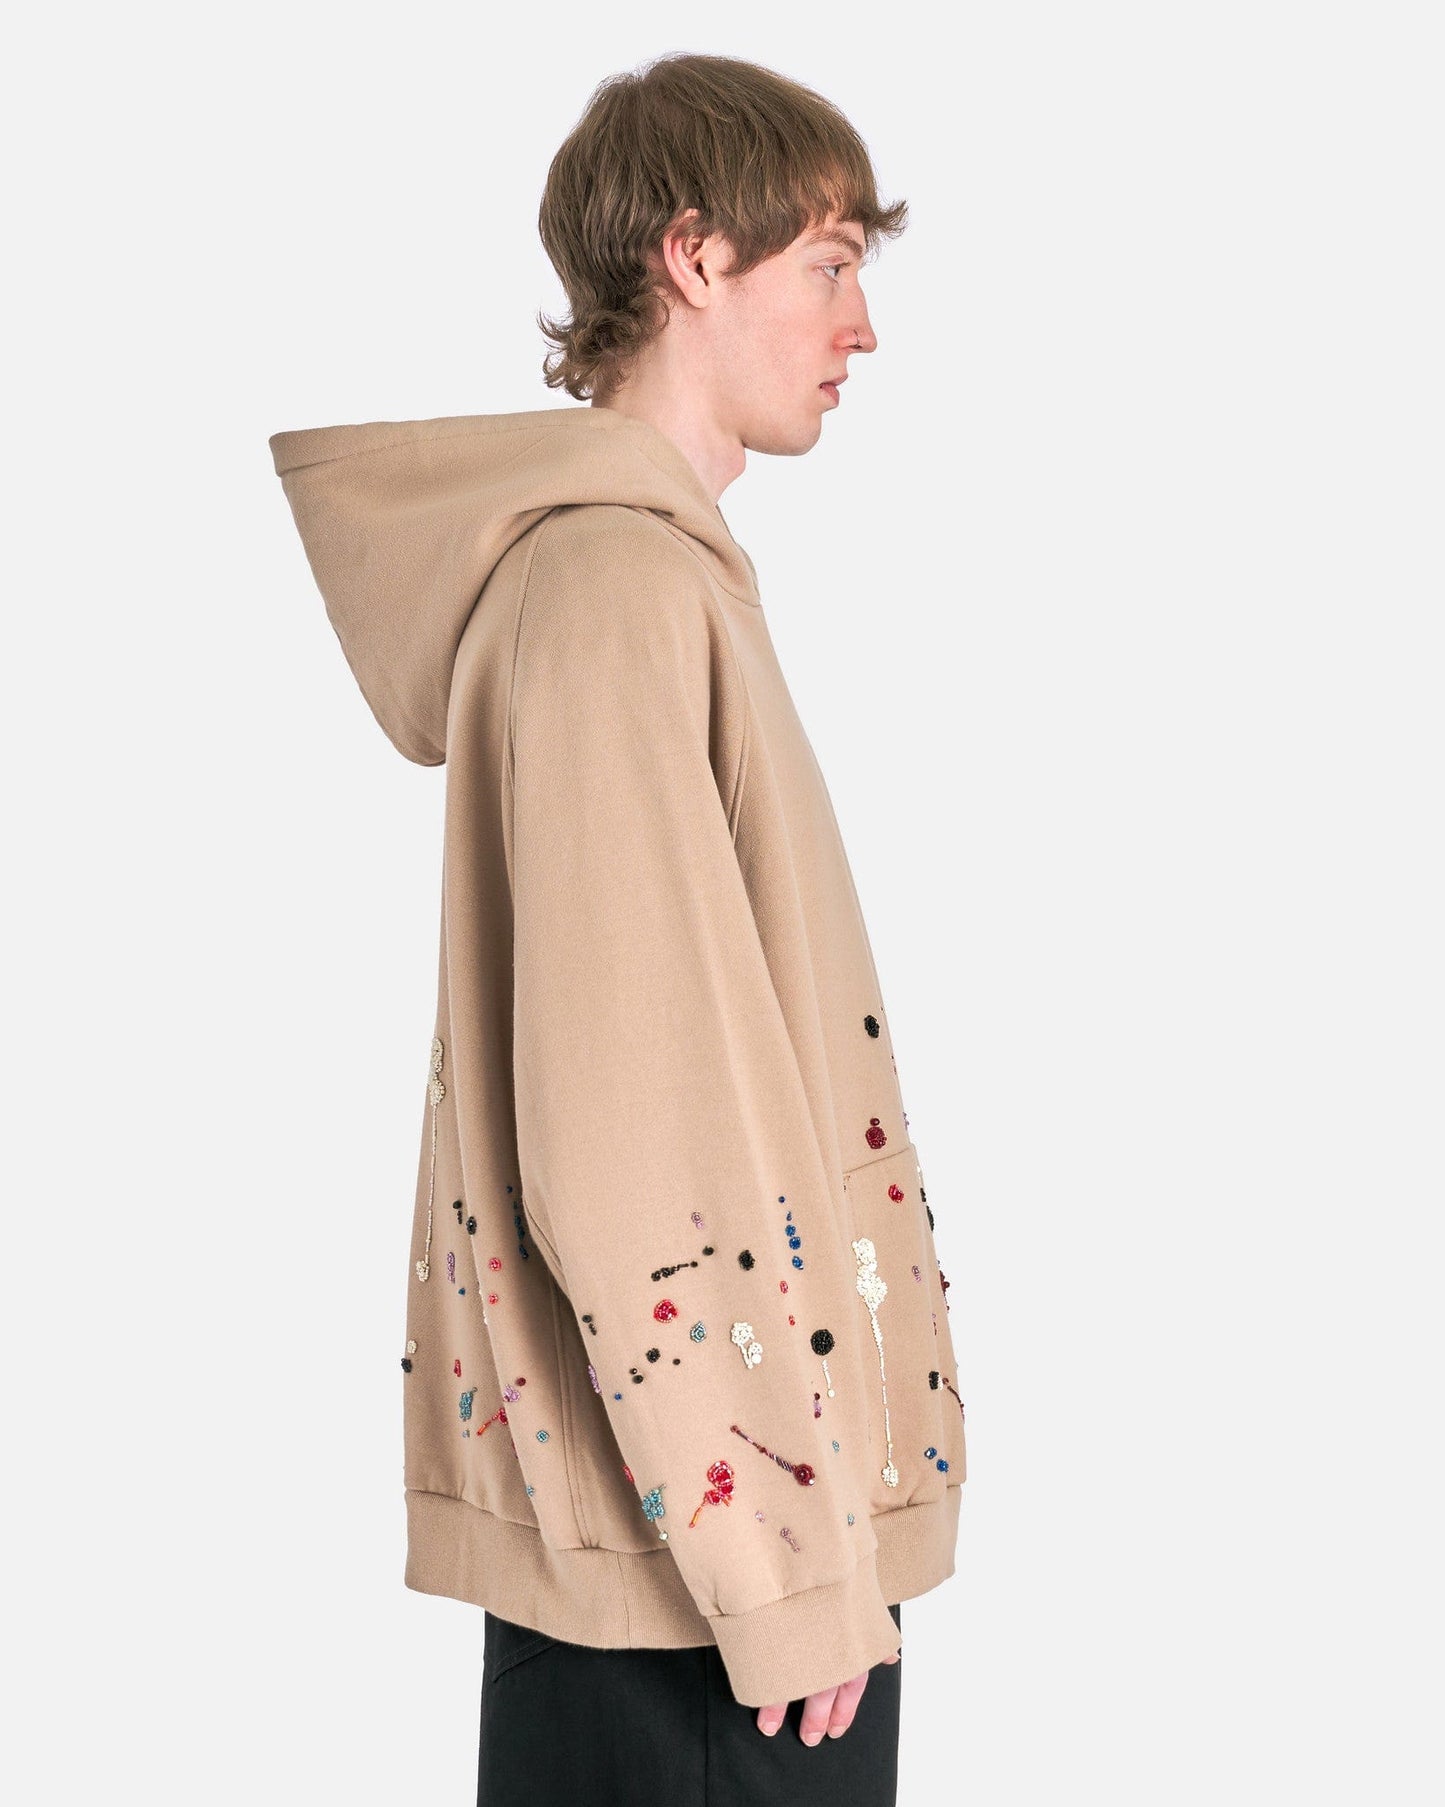 UNDERCOVER Men's Sweater Embroidered Splatter Hoodie in Beige